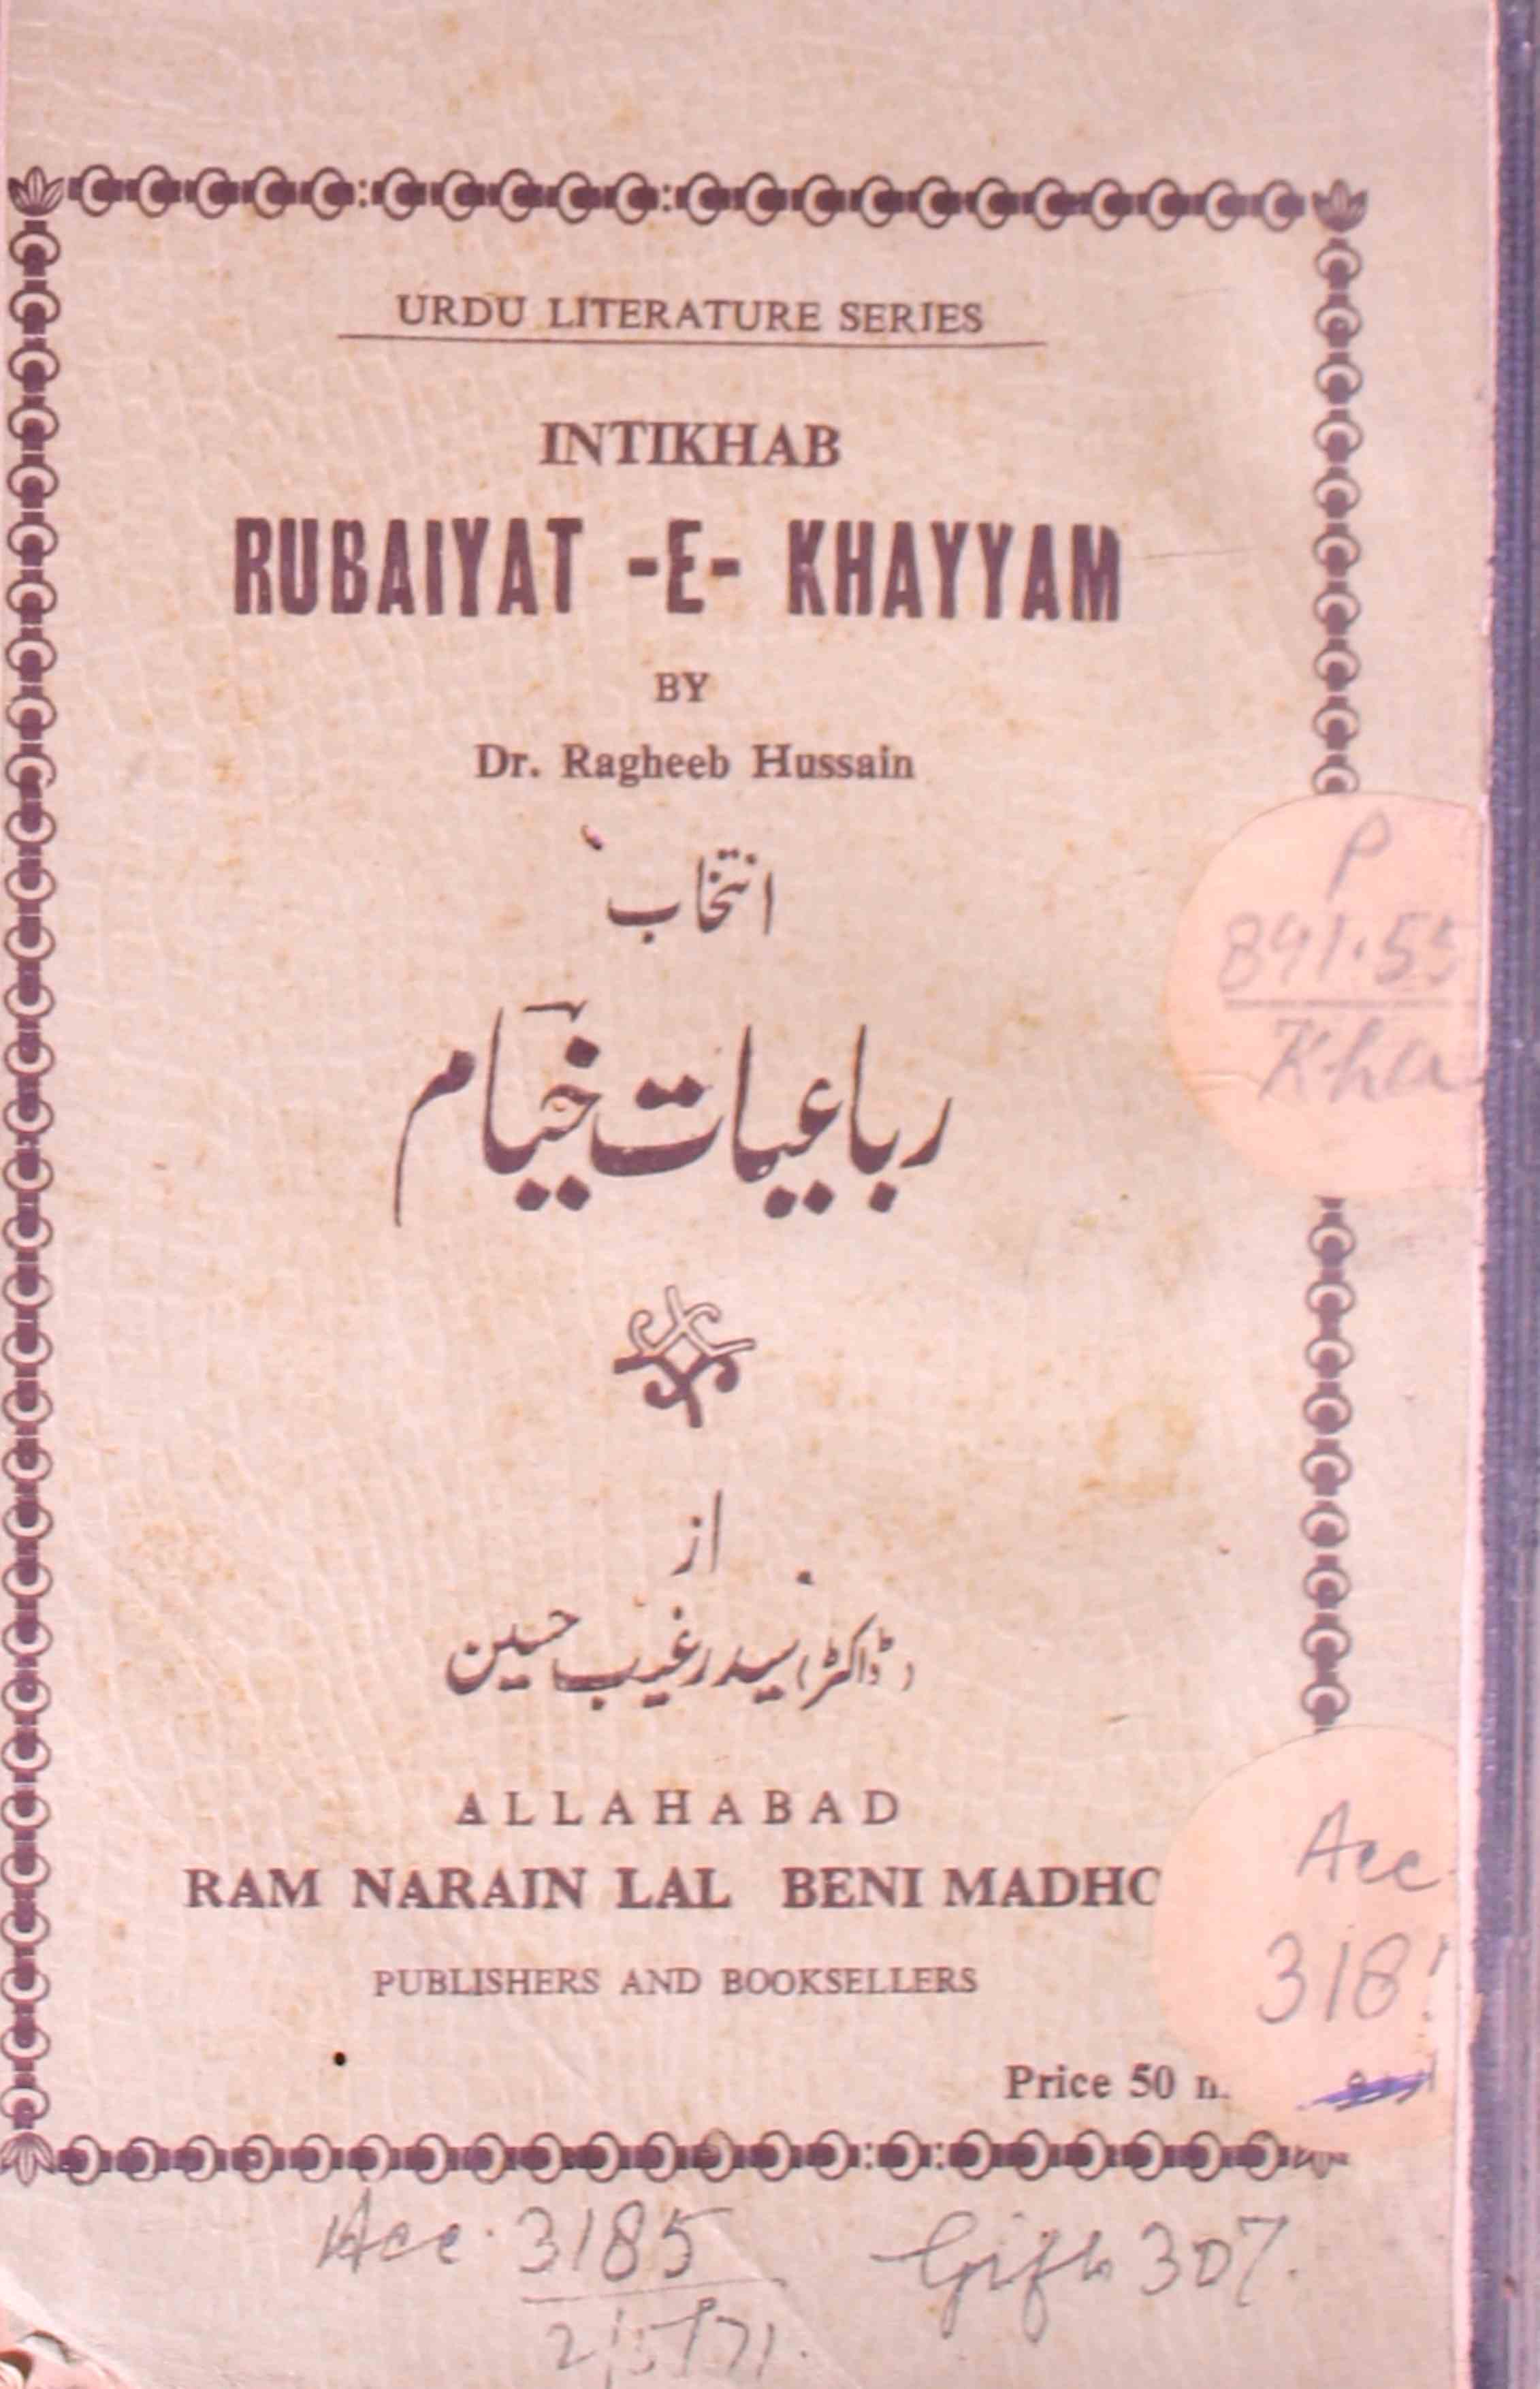 Intikhab Rubaiyat-e-Khayyam